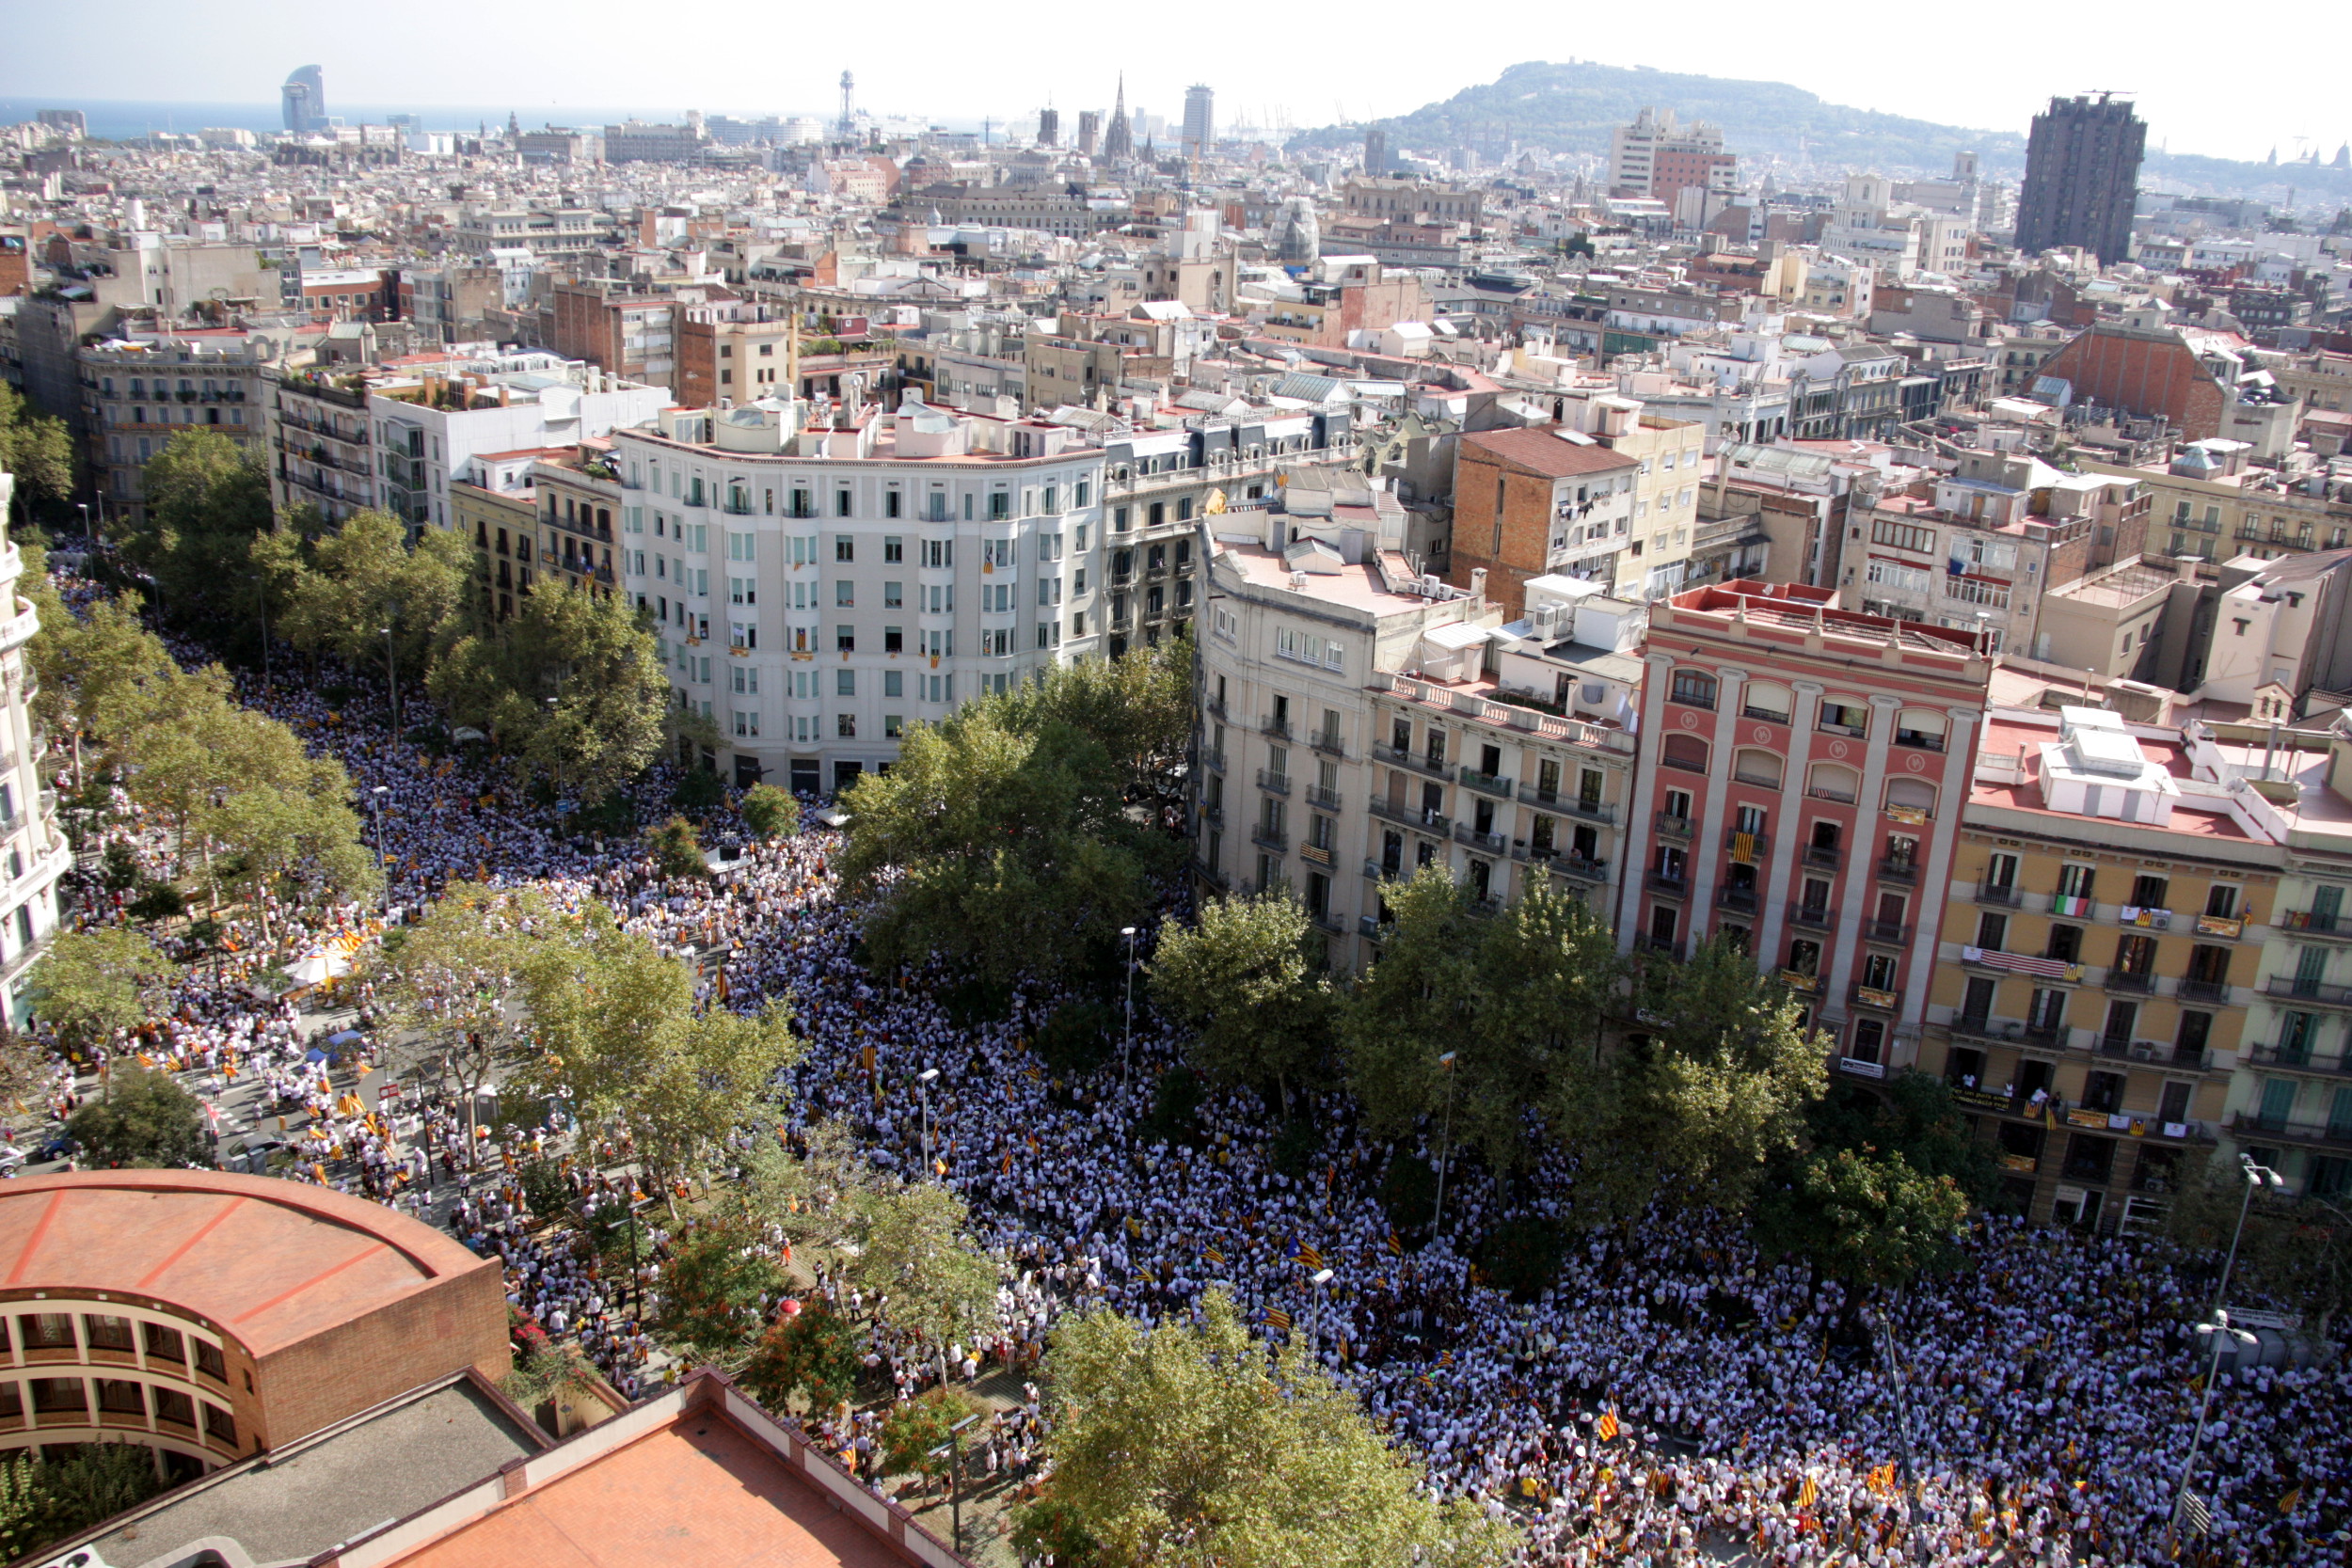 Image of the September 11, 2016 demonstration in Barcelona